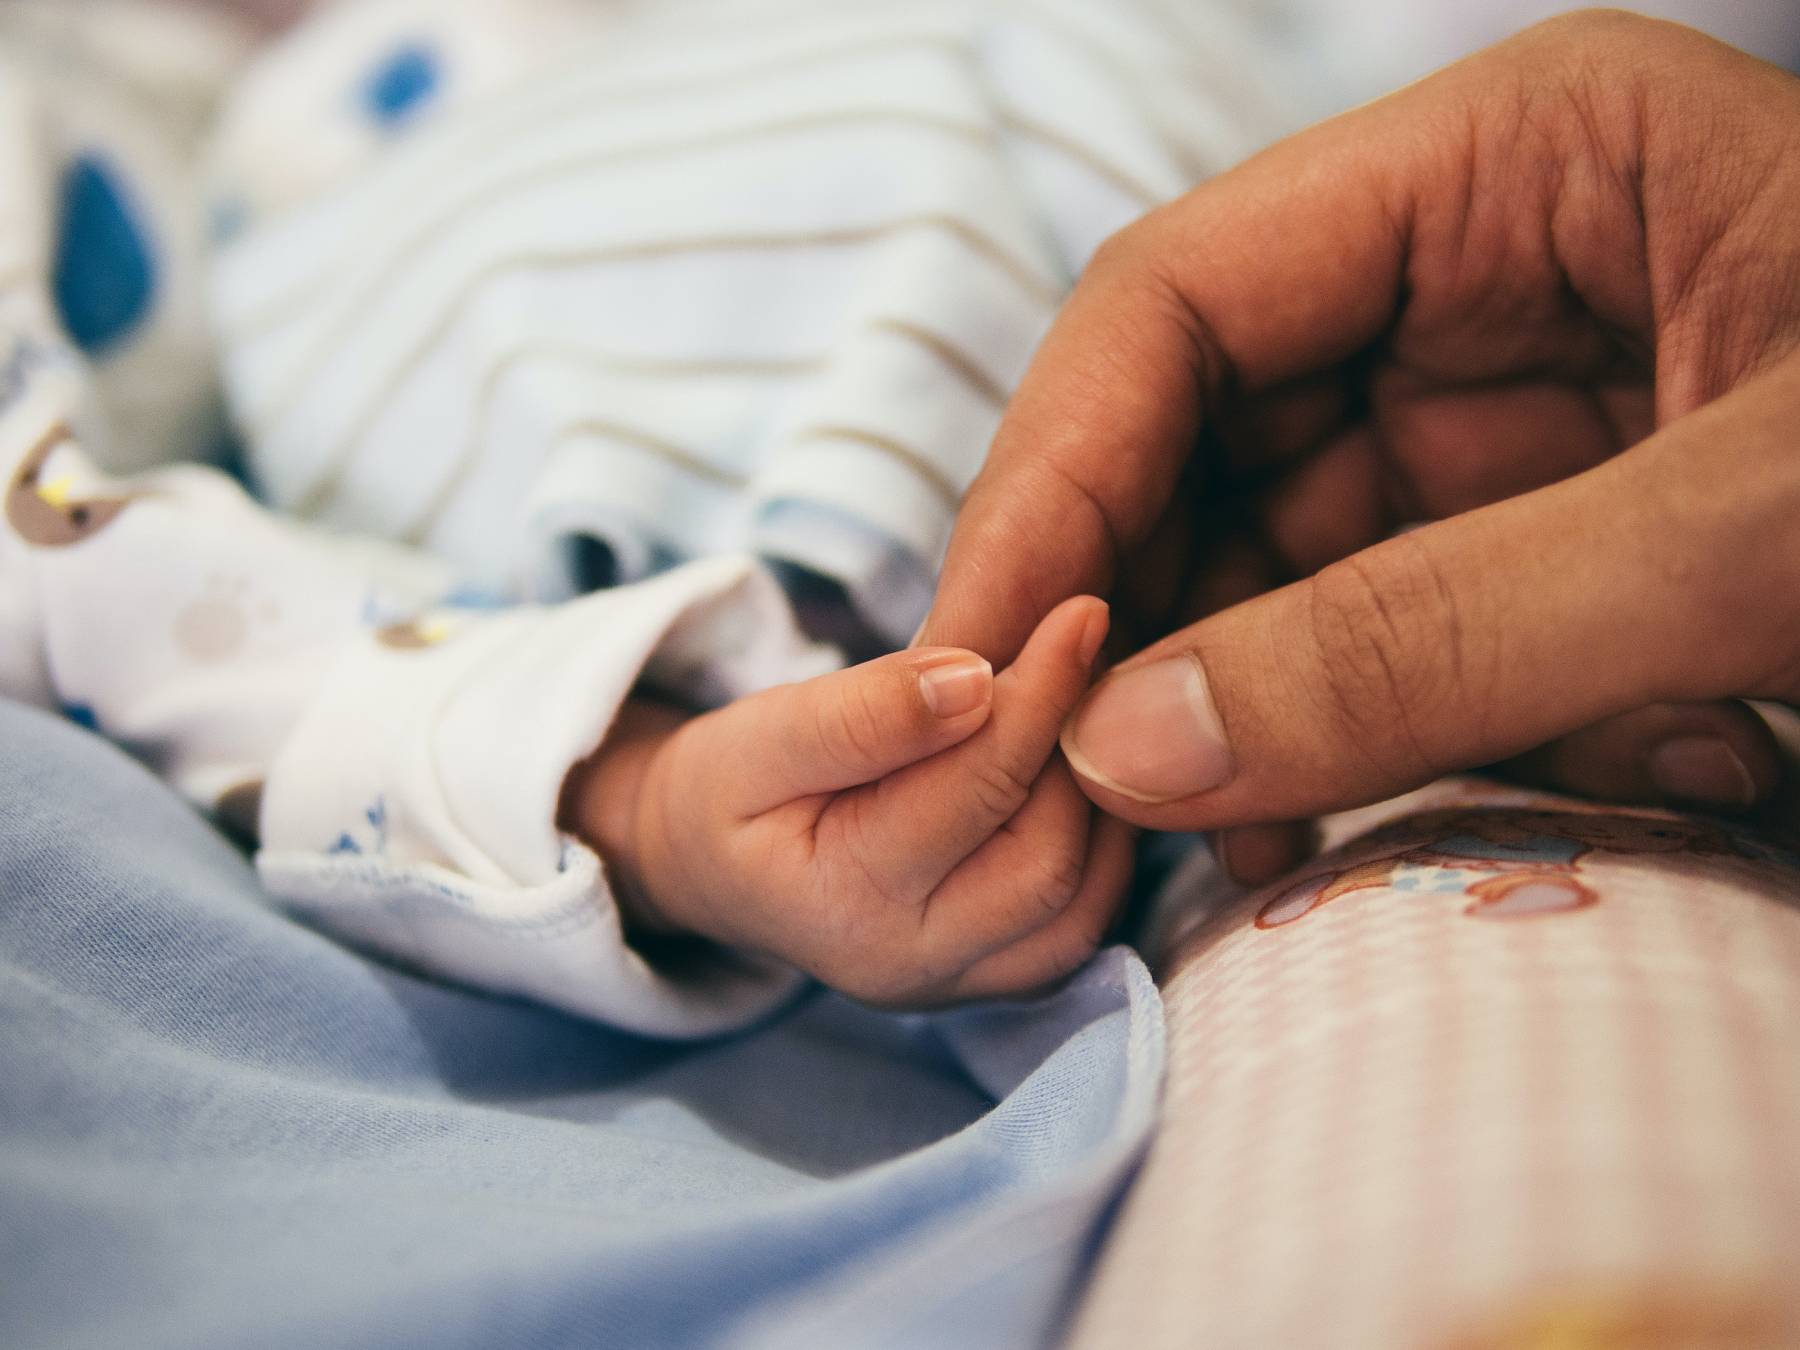 Έγκυος με κορονοϊό- Πάτρα: Γέννησε με καισαρική και έπειτα διασωληνώθηκε